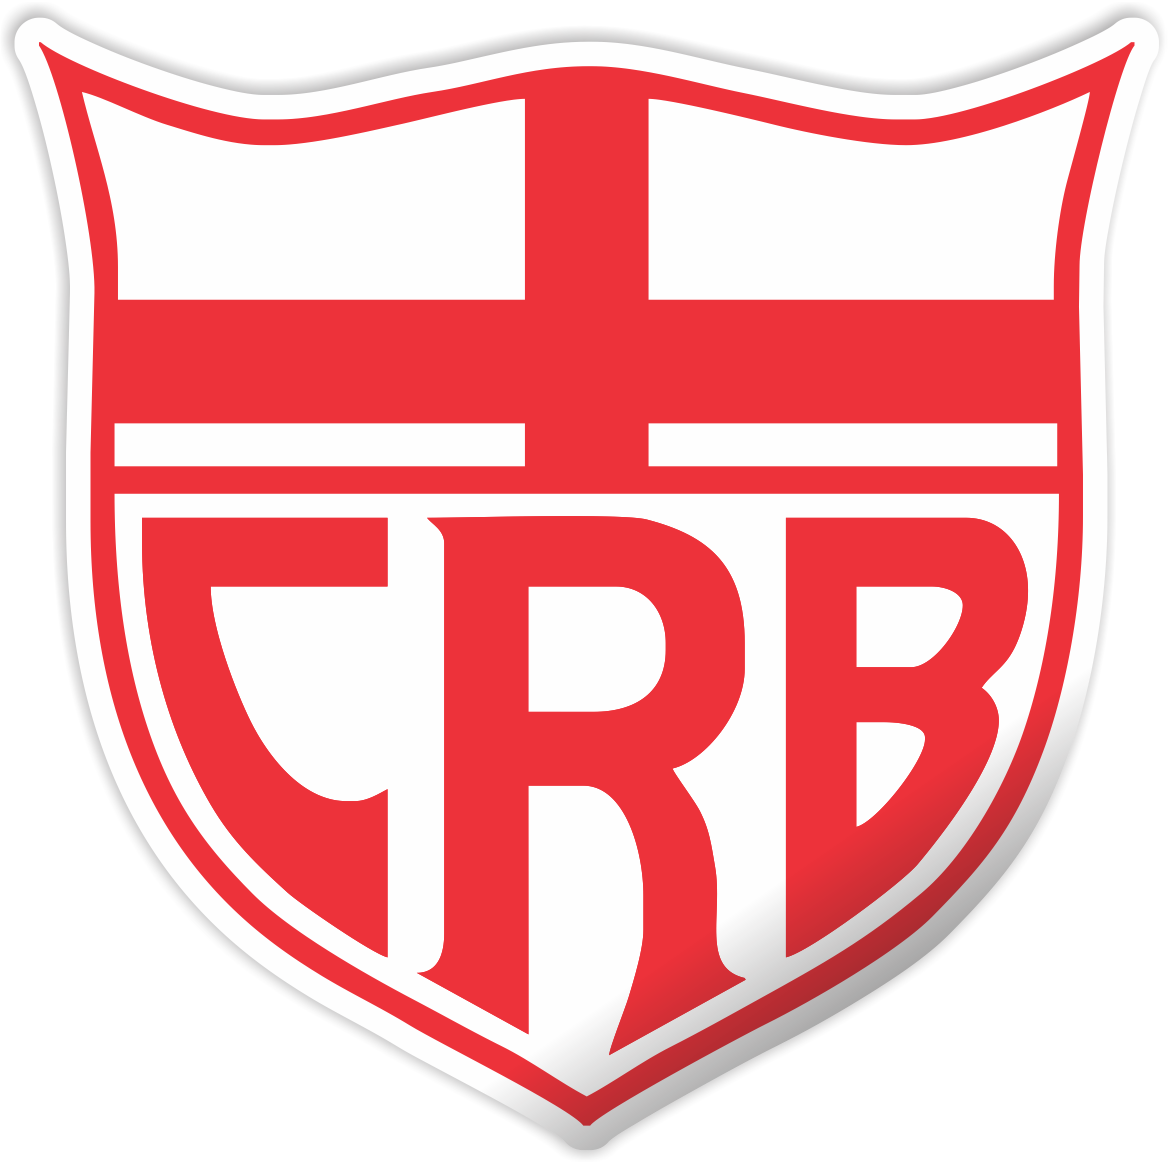 Escudos Futebol Brasileiro - Série A